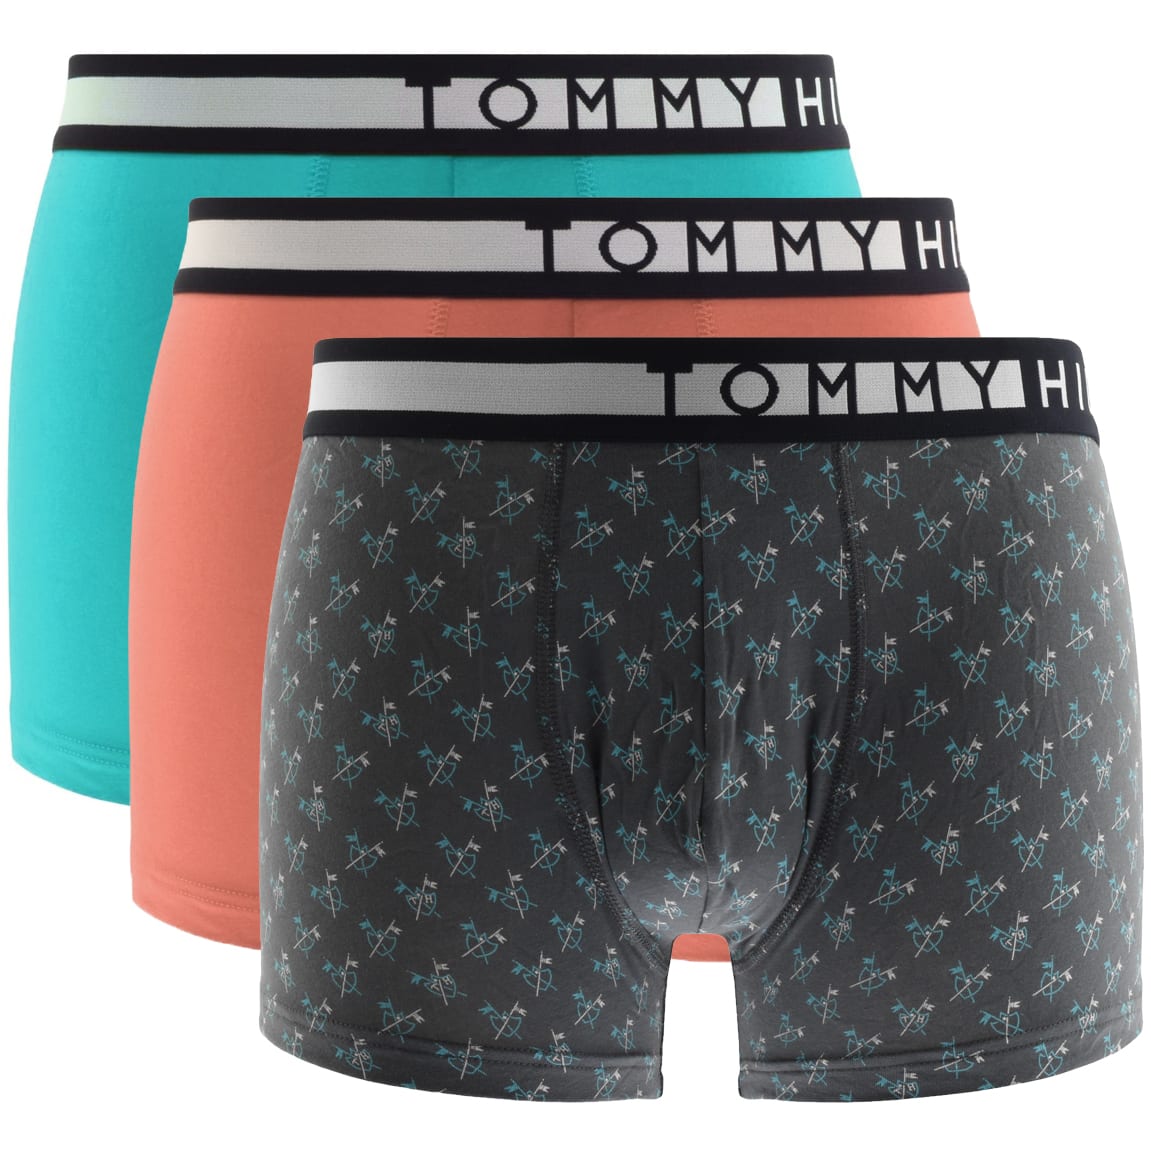 tommy hilfiger underwear 3 pack